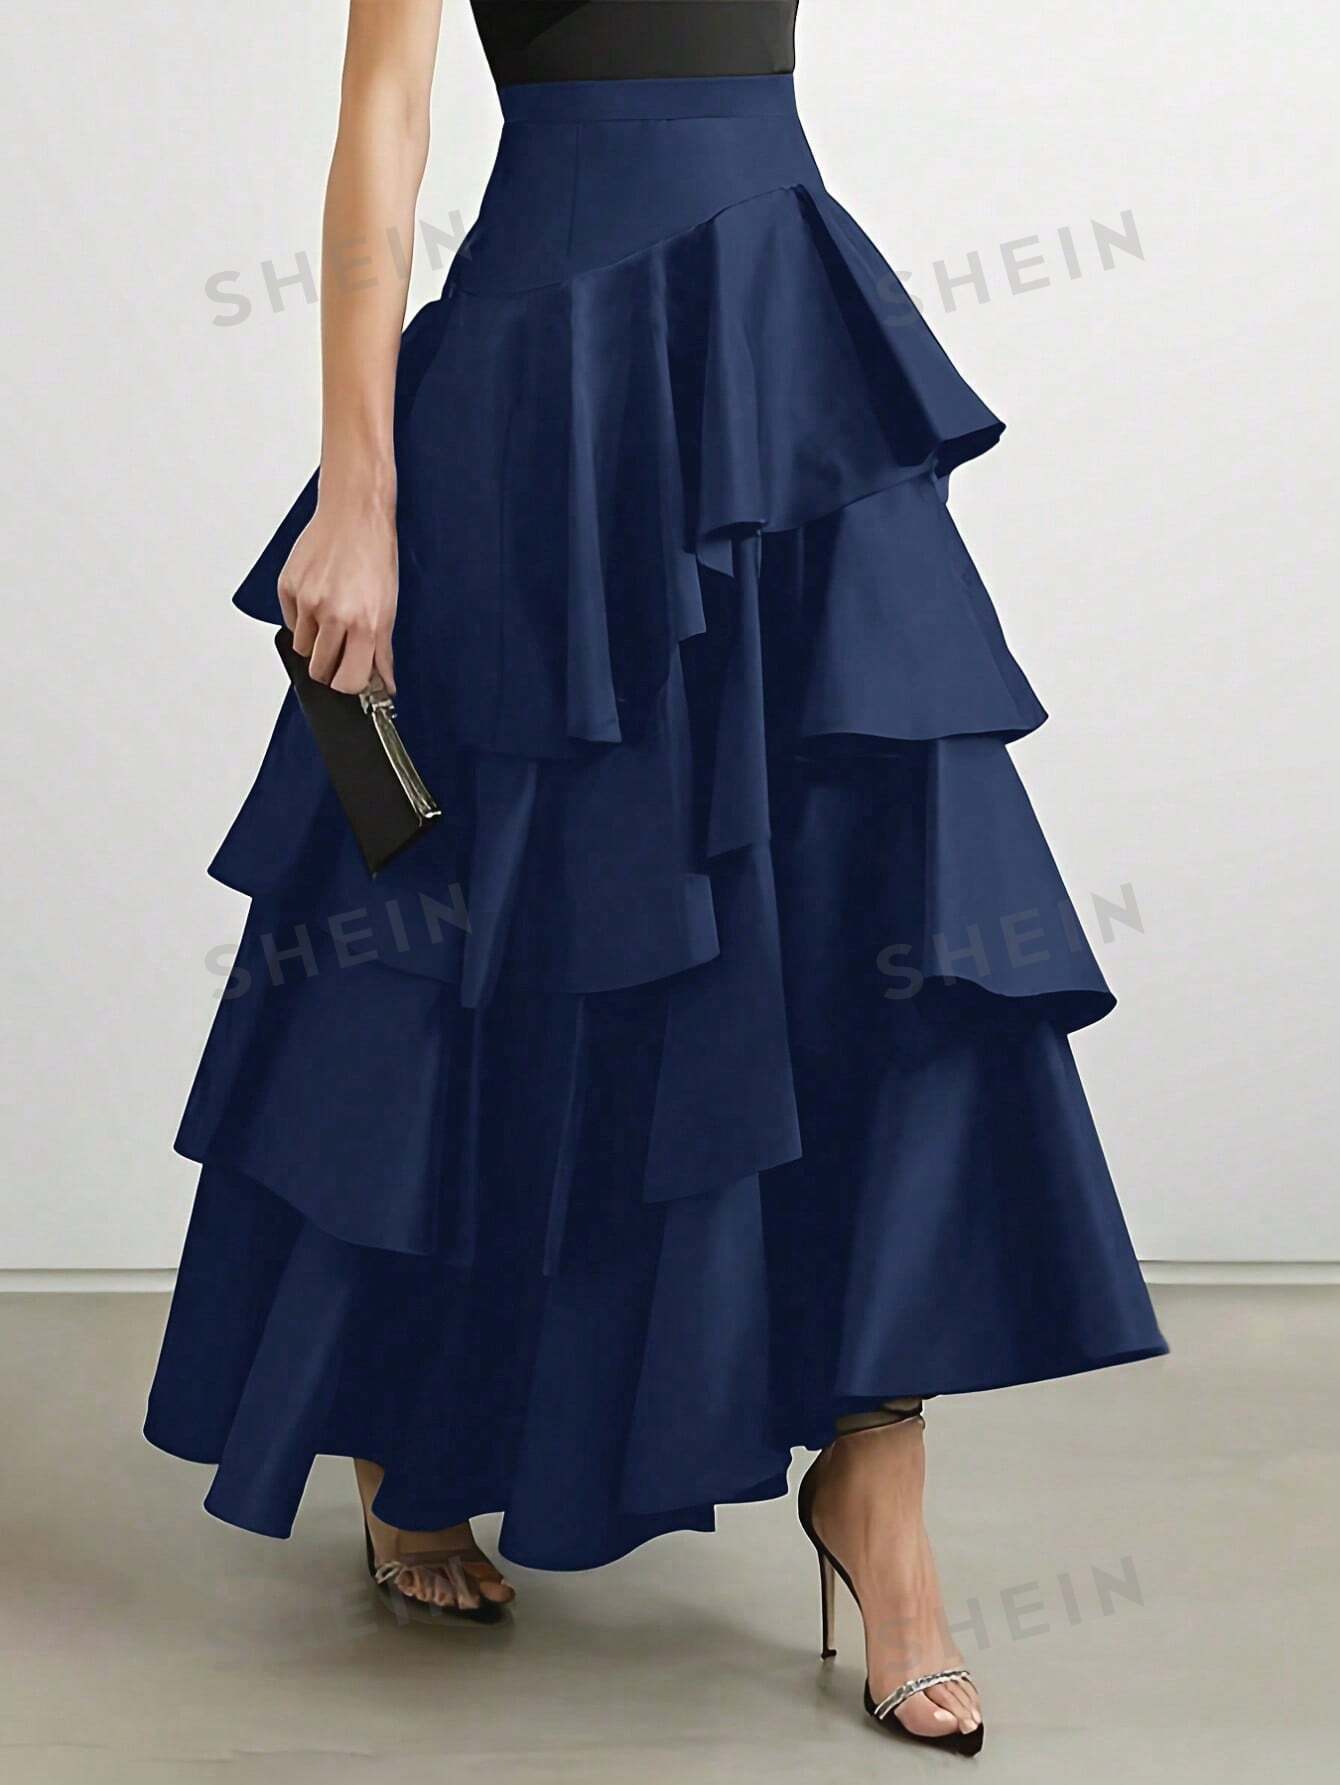 SHEIN Privé Однотонная многослойная юбка-миди с рюшами, темно-синий shein privé однотонная многослойная юбка миди с рюшами темно синий